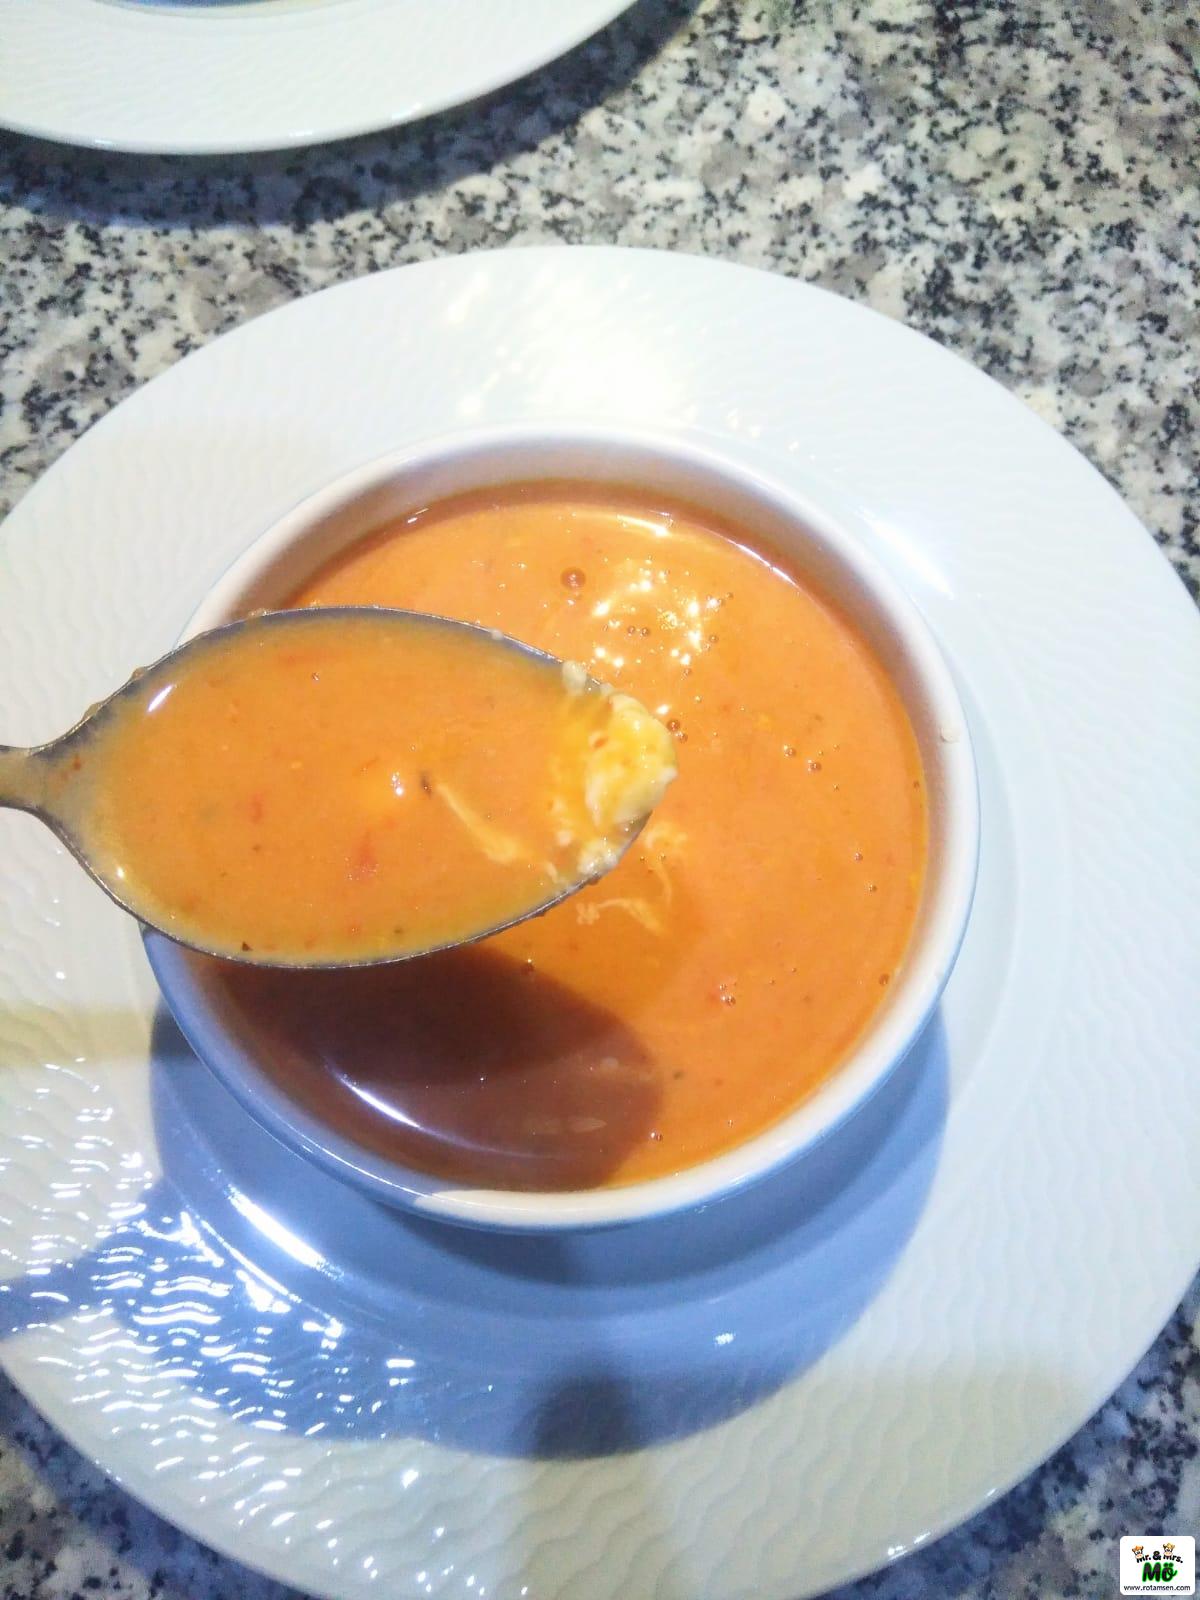 Köz Domates Çorbası 1 – koz domates corbasi 1